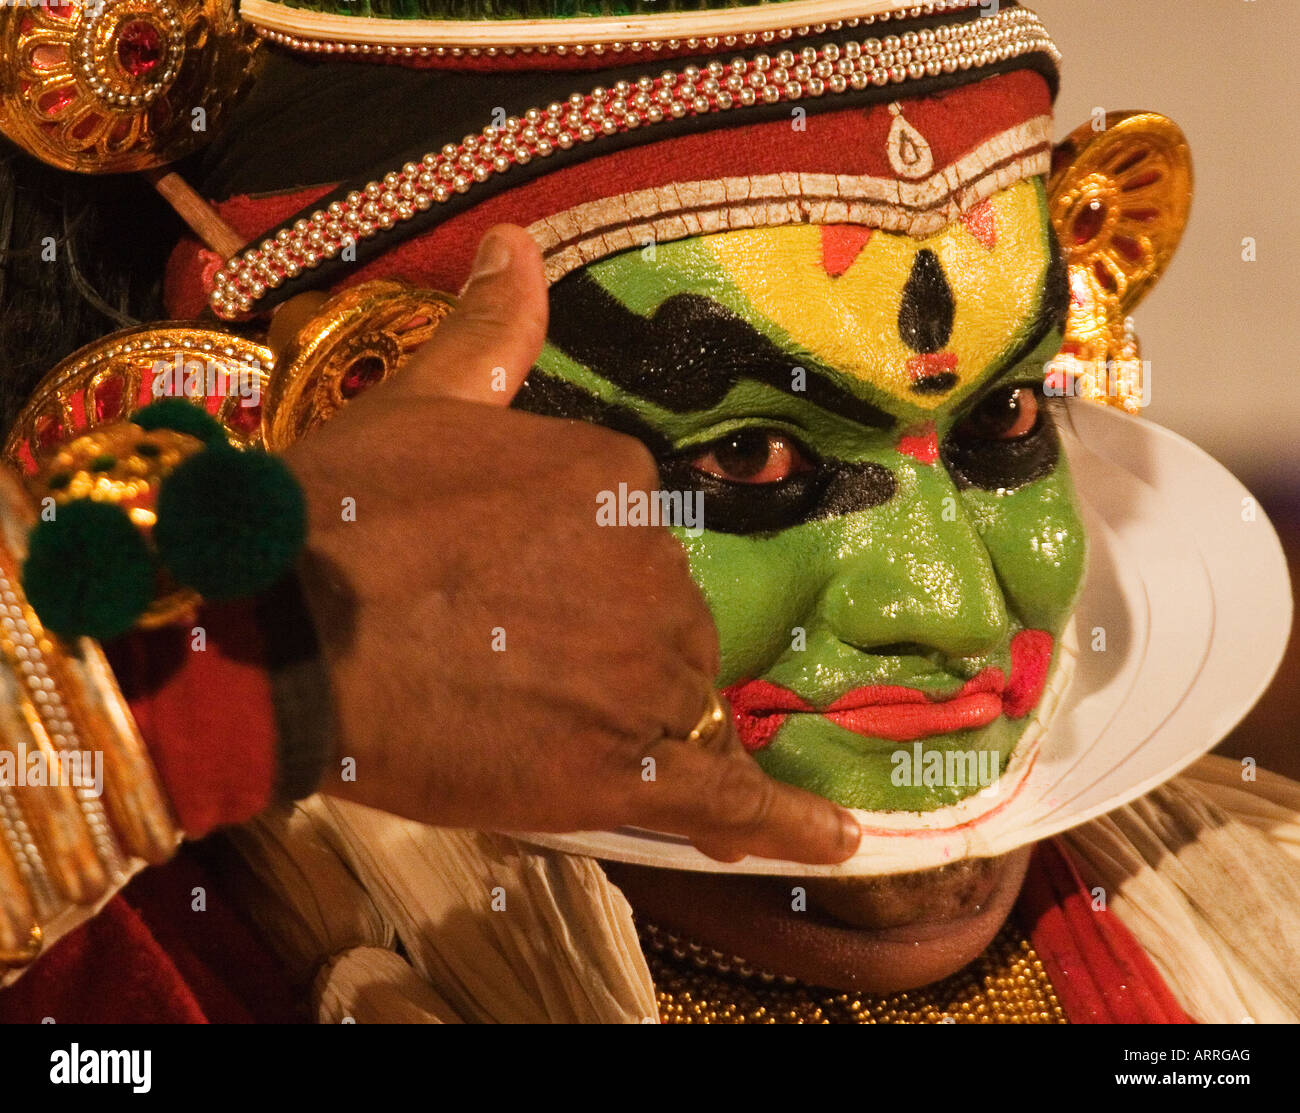 A Kathakali artiste performing Kathakali. Stock Photo